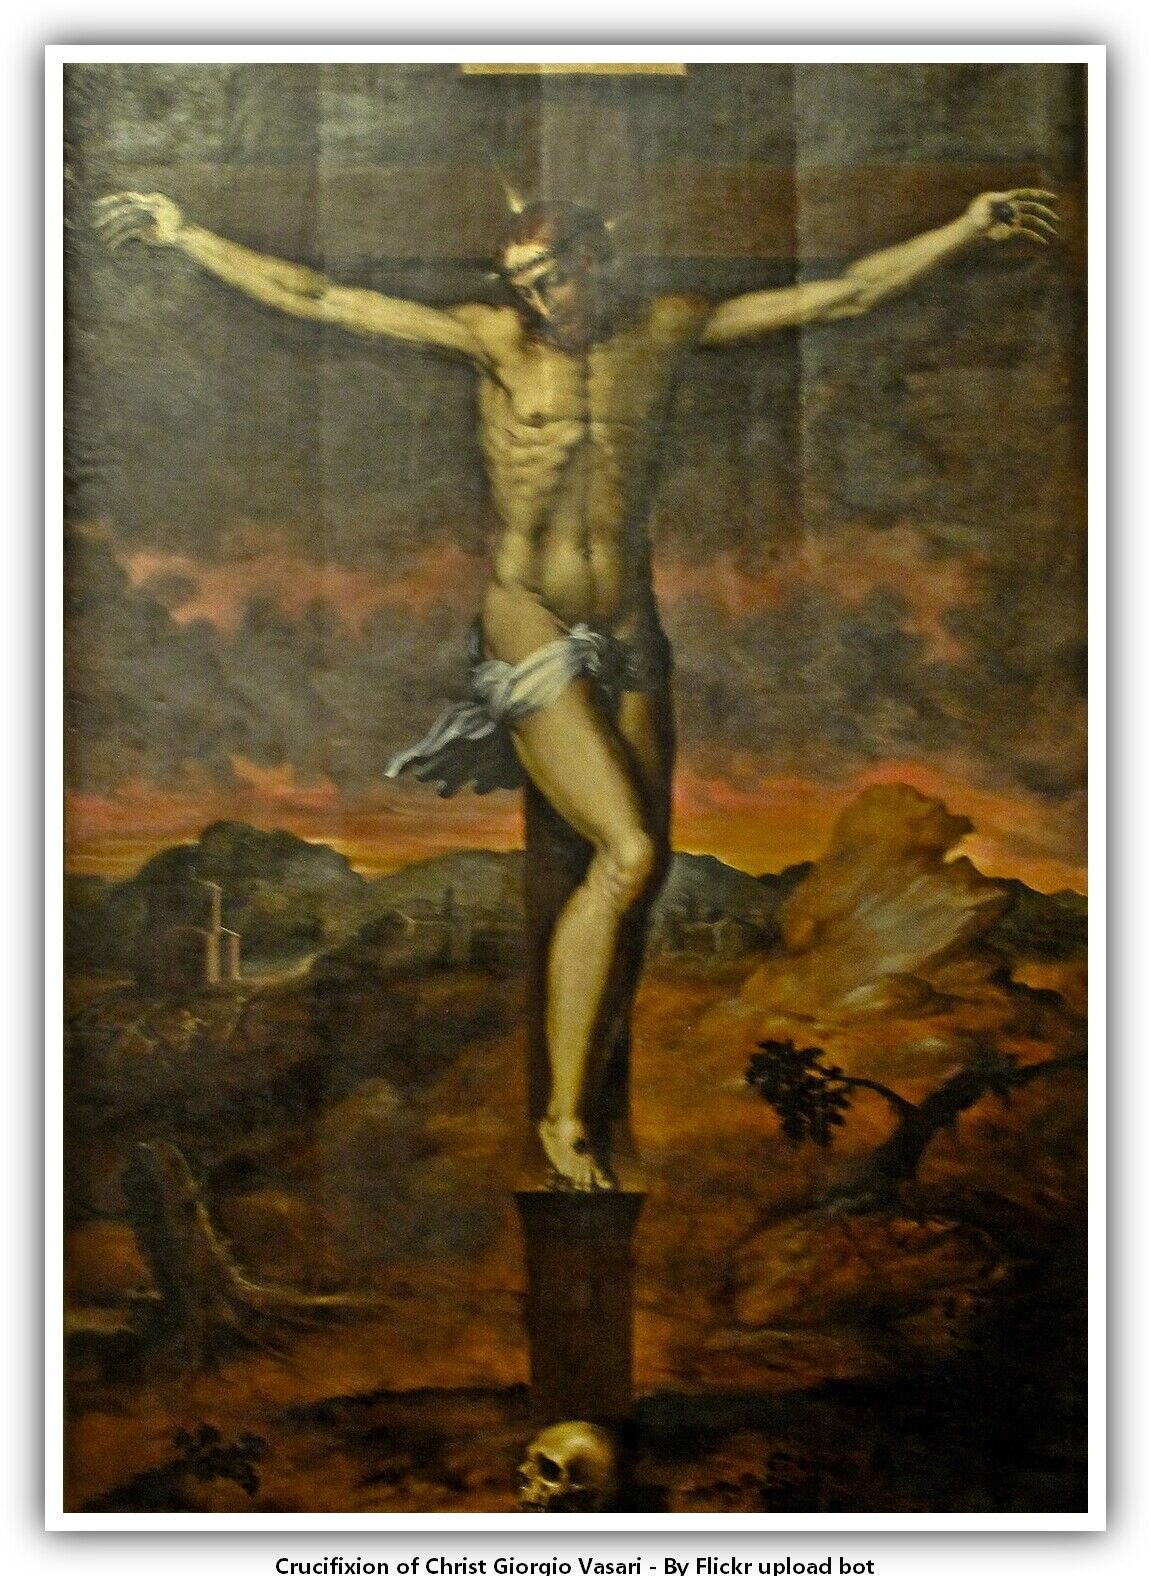 Crucifixion of Christ Giorgio Vasari